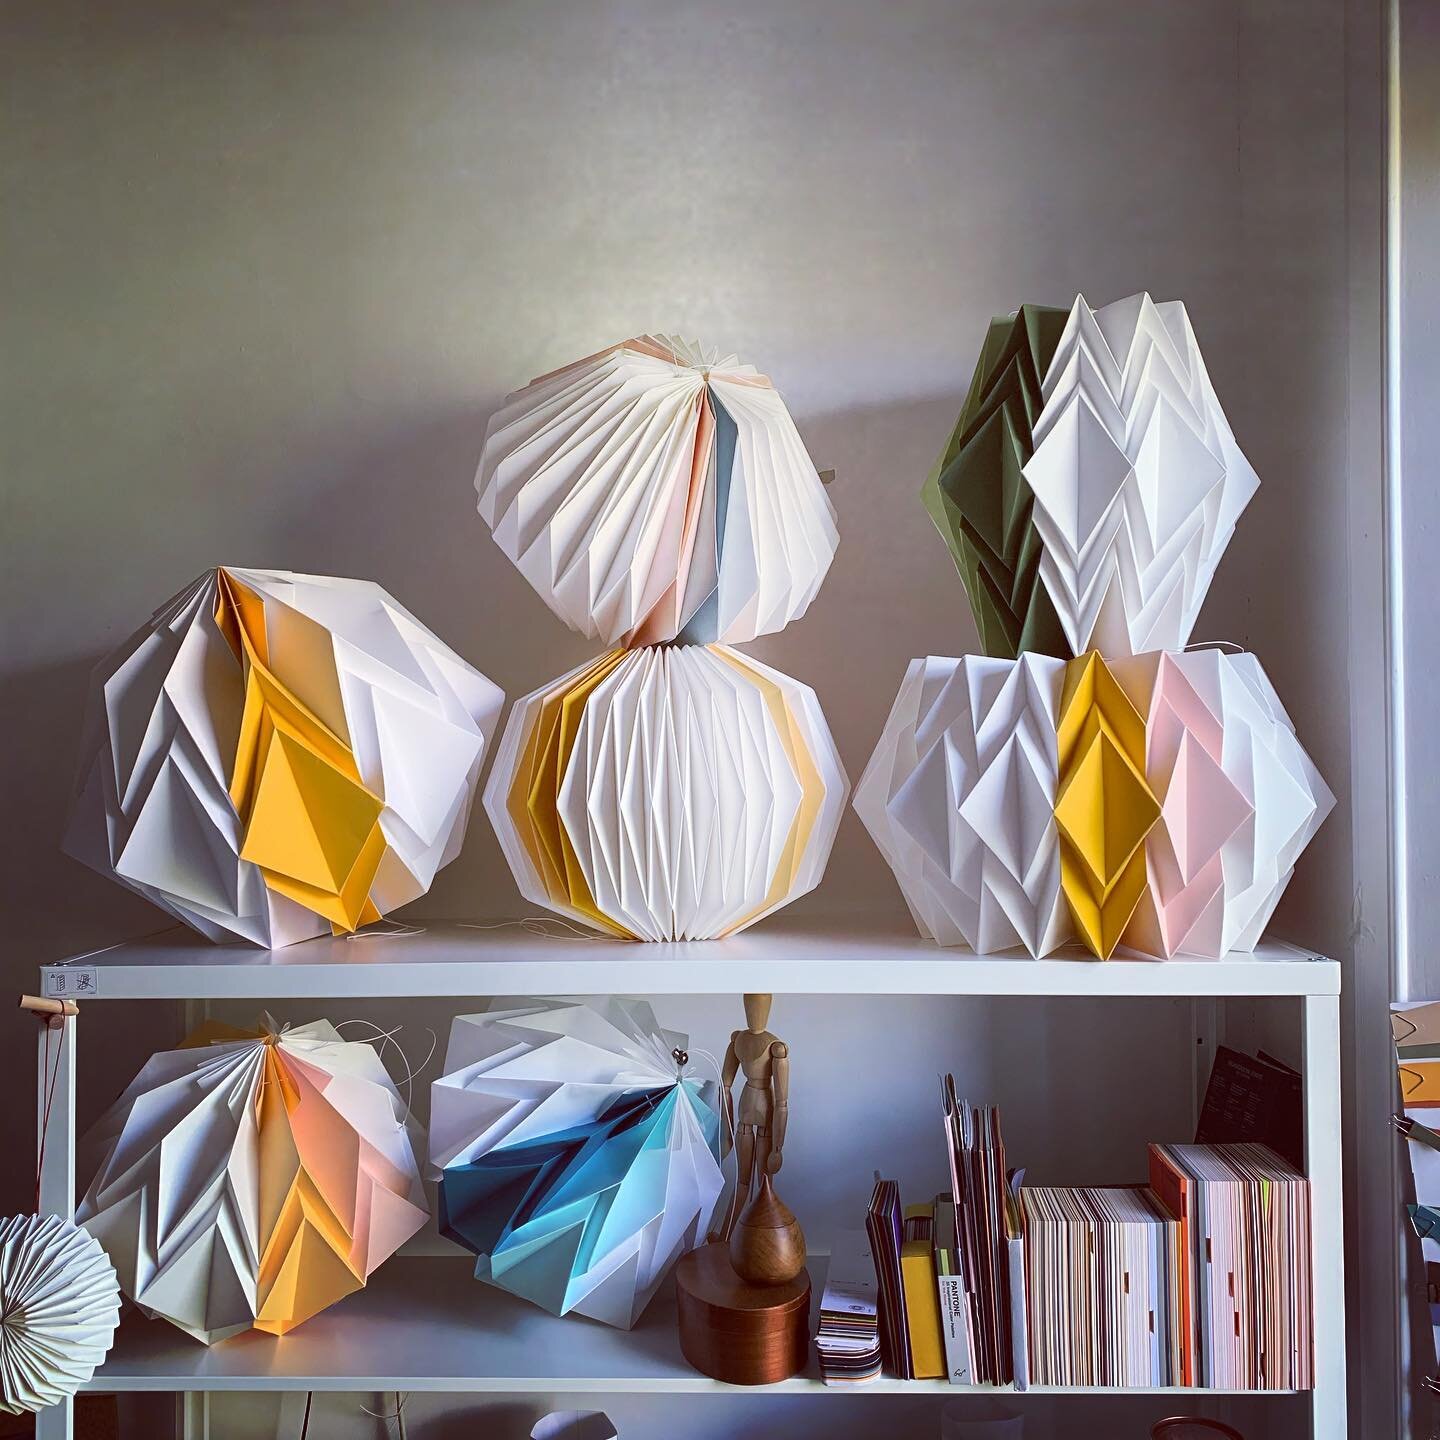 Studio shelves 
.
.
#studio #shelves #samples #lighting #lightingdesign #lampshades #lightshade #design #craft #paper #papercraft #papercrafting #fold #folded #colour